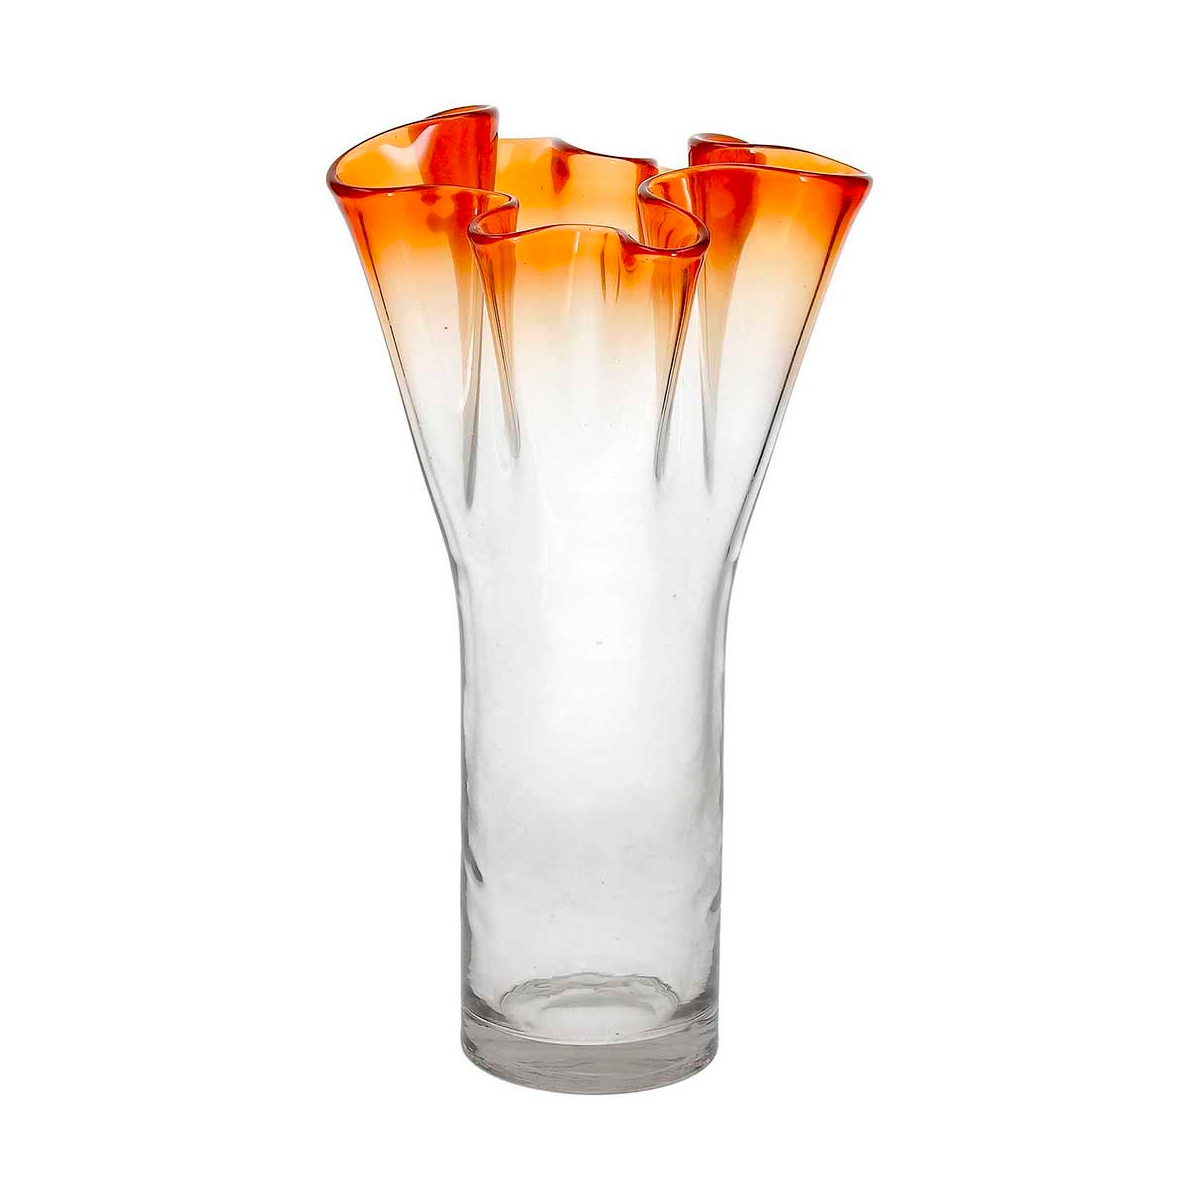 Ваза Andrea Fontebasso Glass Design Bizarre 32см, цвет оранжевый часы песочные andrea fontebasso glass design time 20см цвет желтый